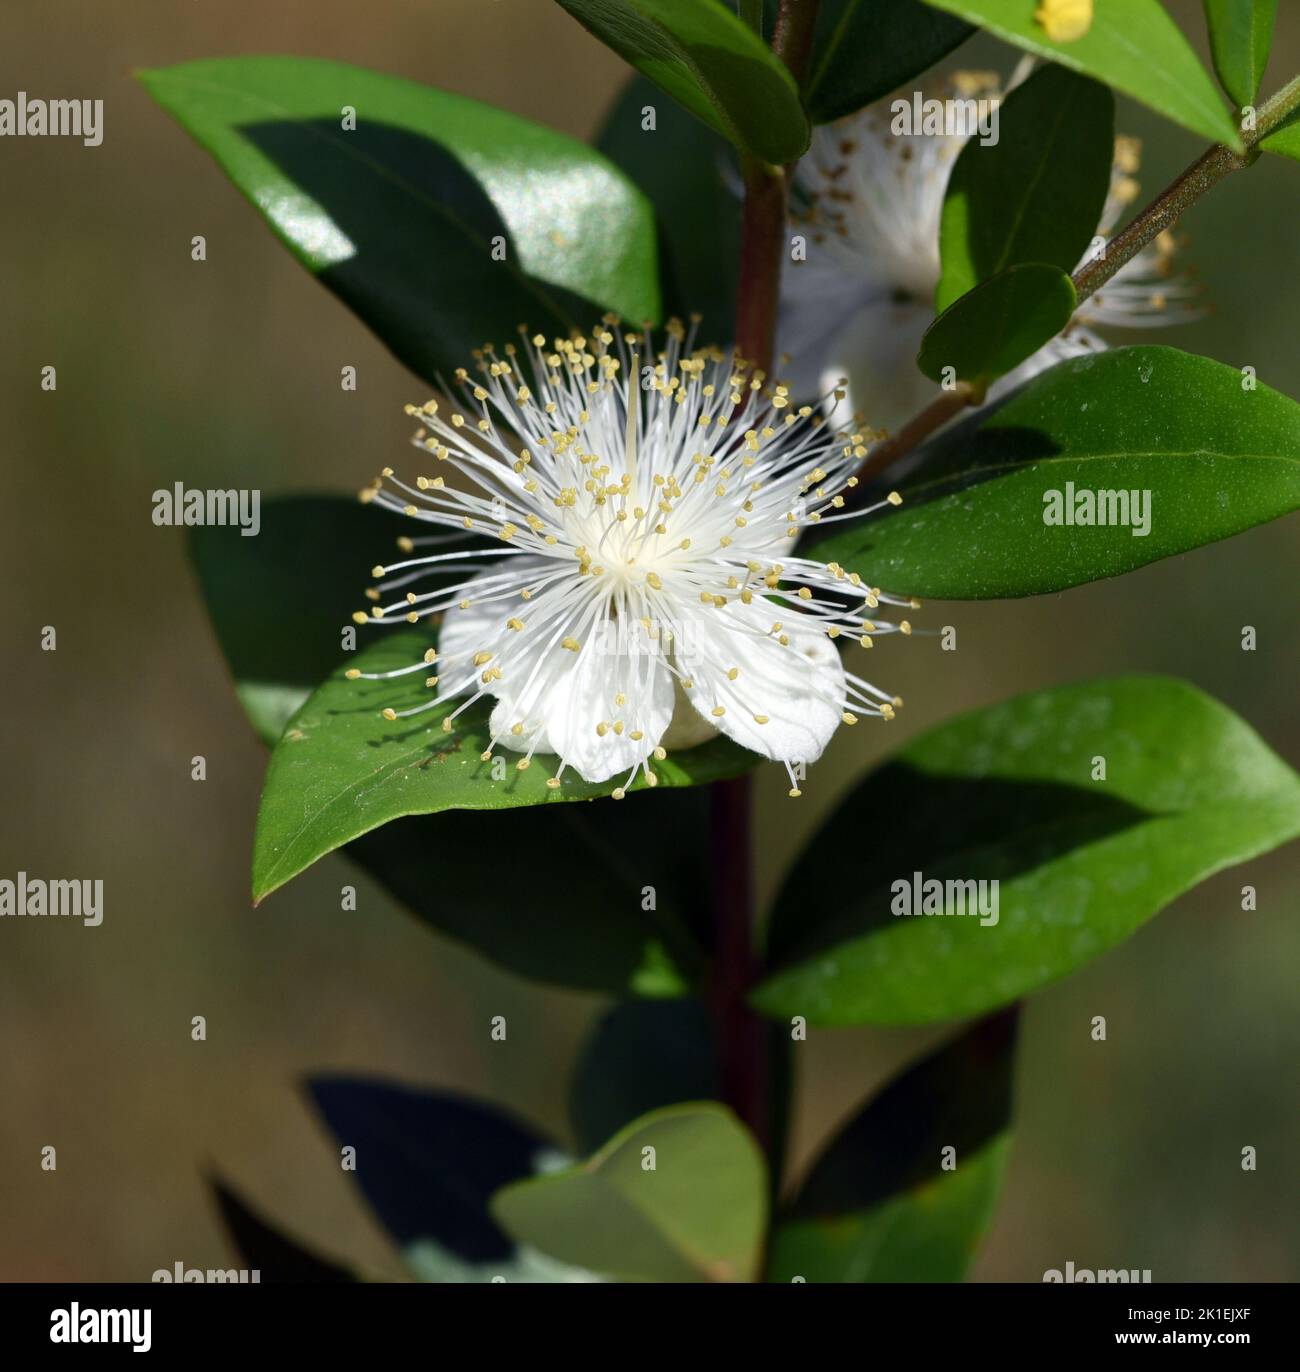 Myrtle, Myrtus communis, auch Balsam genannt, ist ein Strauch mit schönen weißen Blüten. Sie ist eine wichtige Heilpflanze und eine attraktive Gartenpflanze. Stockfoto